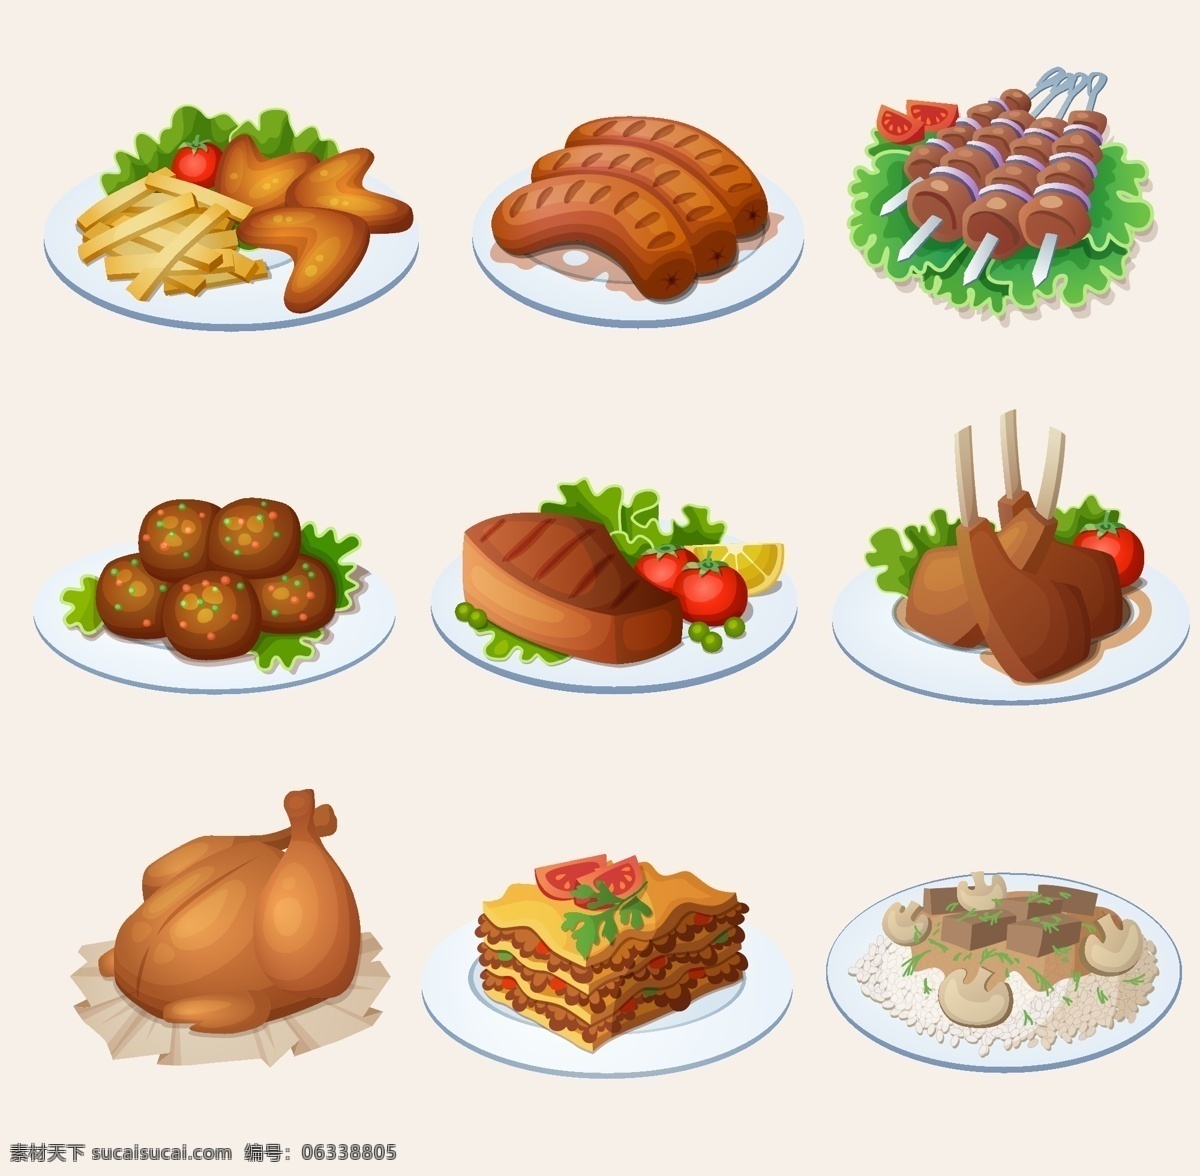 卡通肉菜设计 肉类设计 菜谱 菜谱设计 菜单 创意图 菜单菜谱